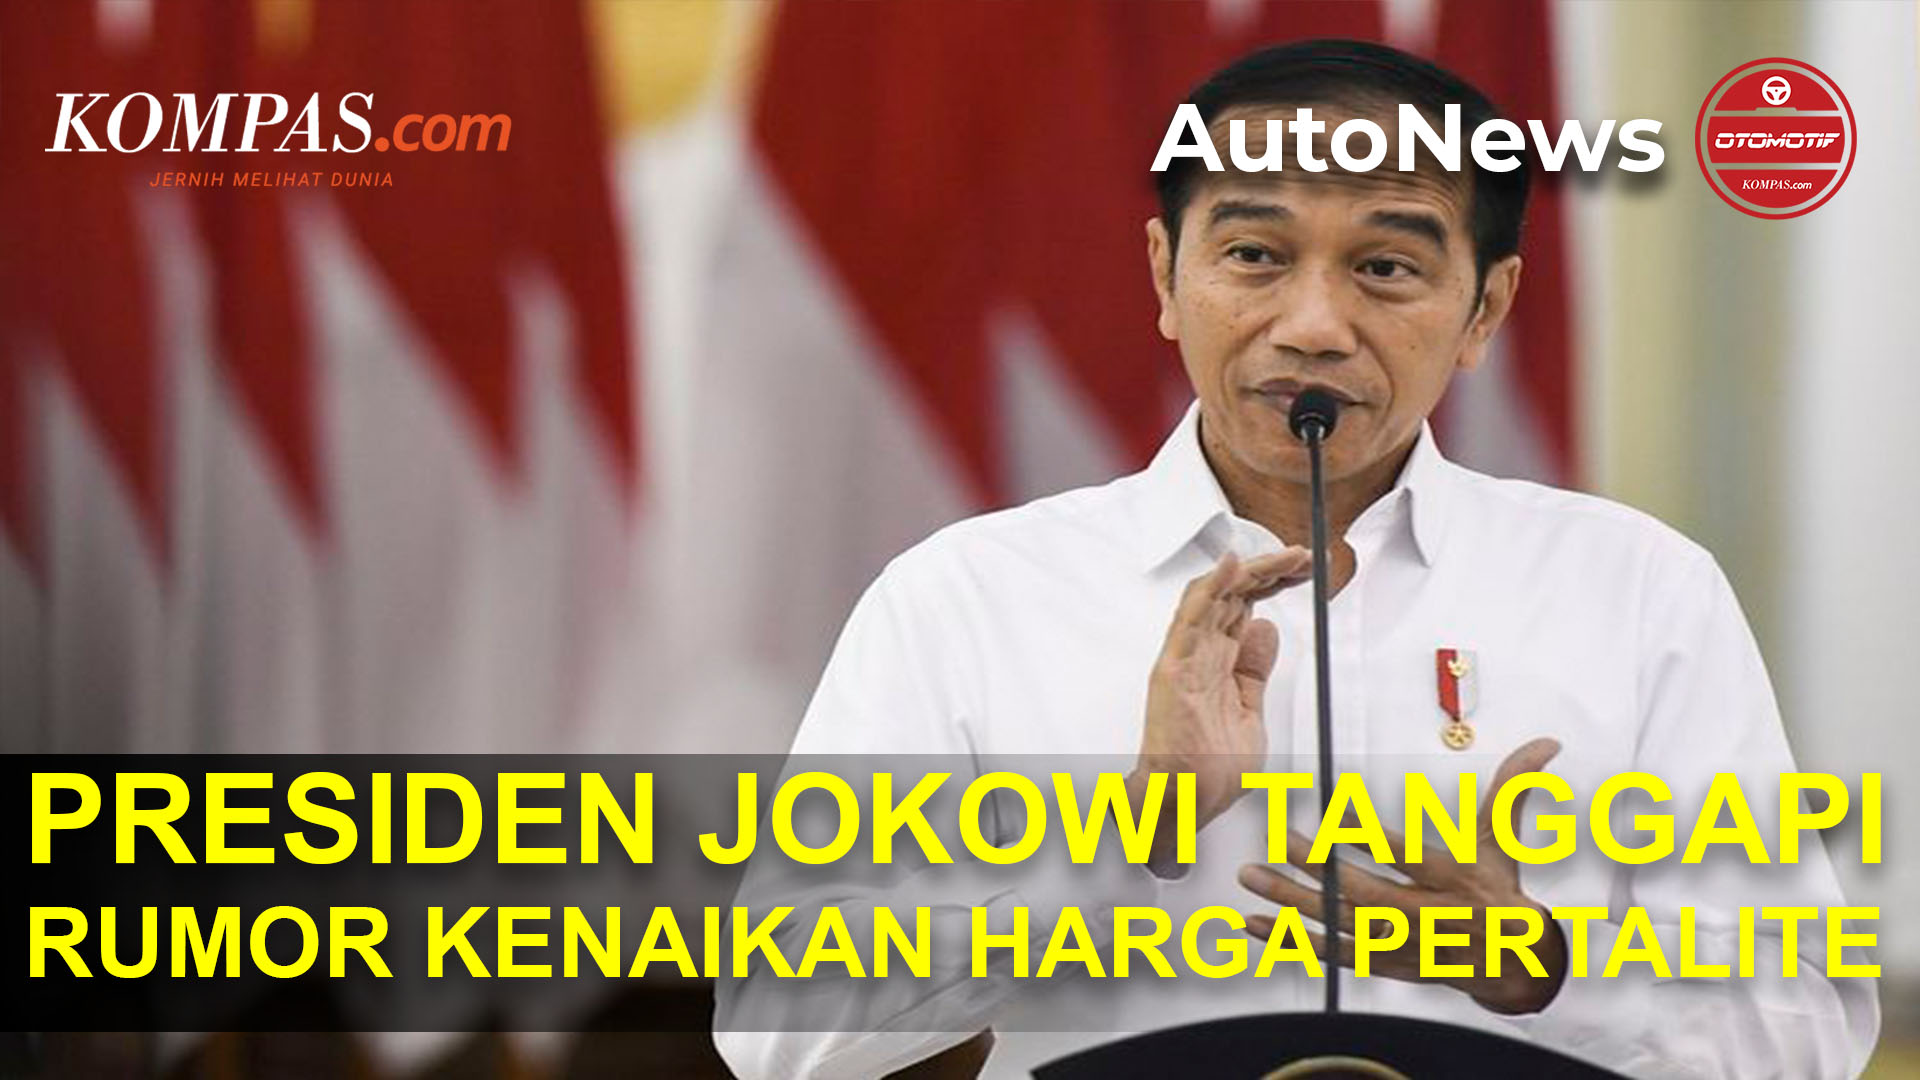 Rumor Harga Pertalite Naik, Begini Tanggapan Jokowi